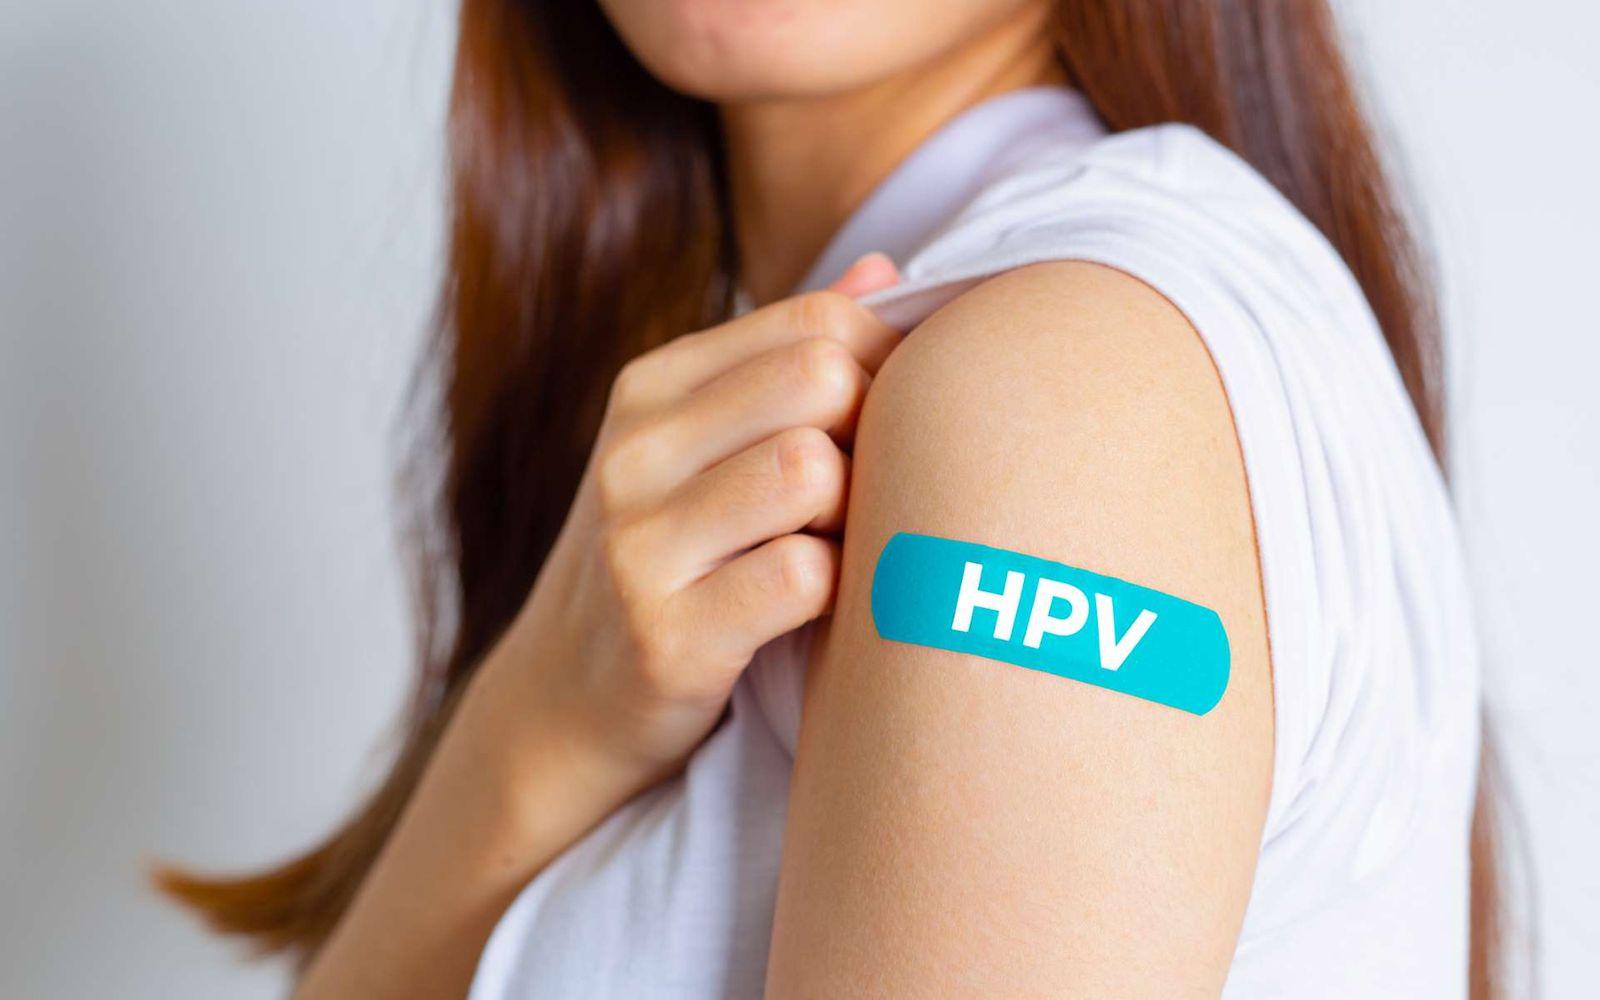 HPV-Impfungen: Junge Frau zeigt ein Pflaster auf ihrer Schulter, auf dem HPV steht.